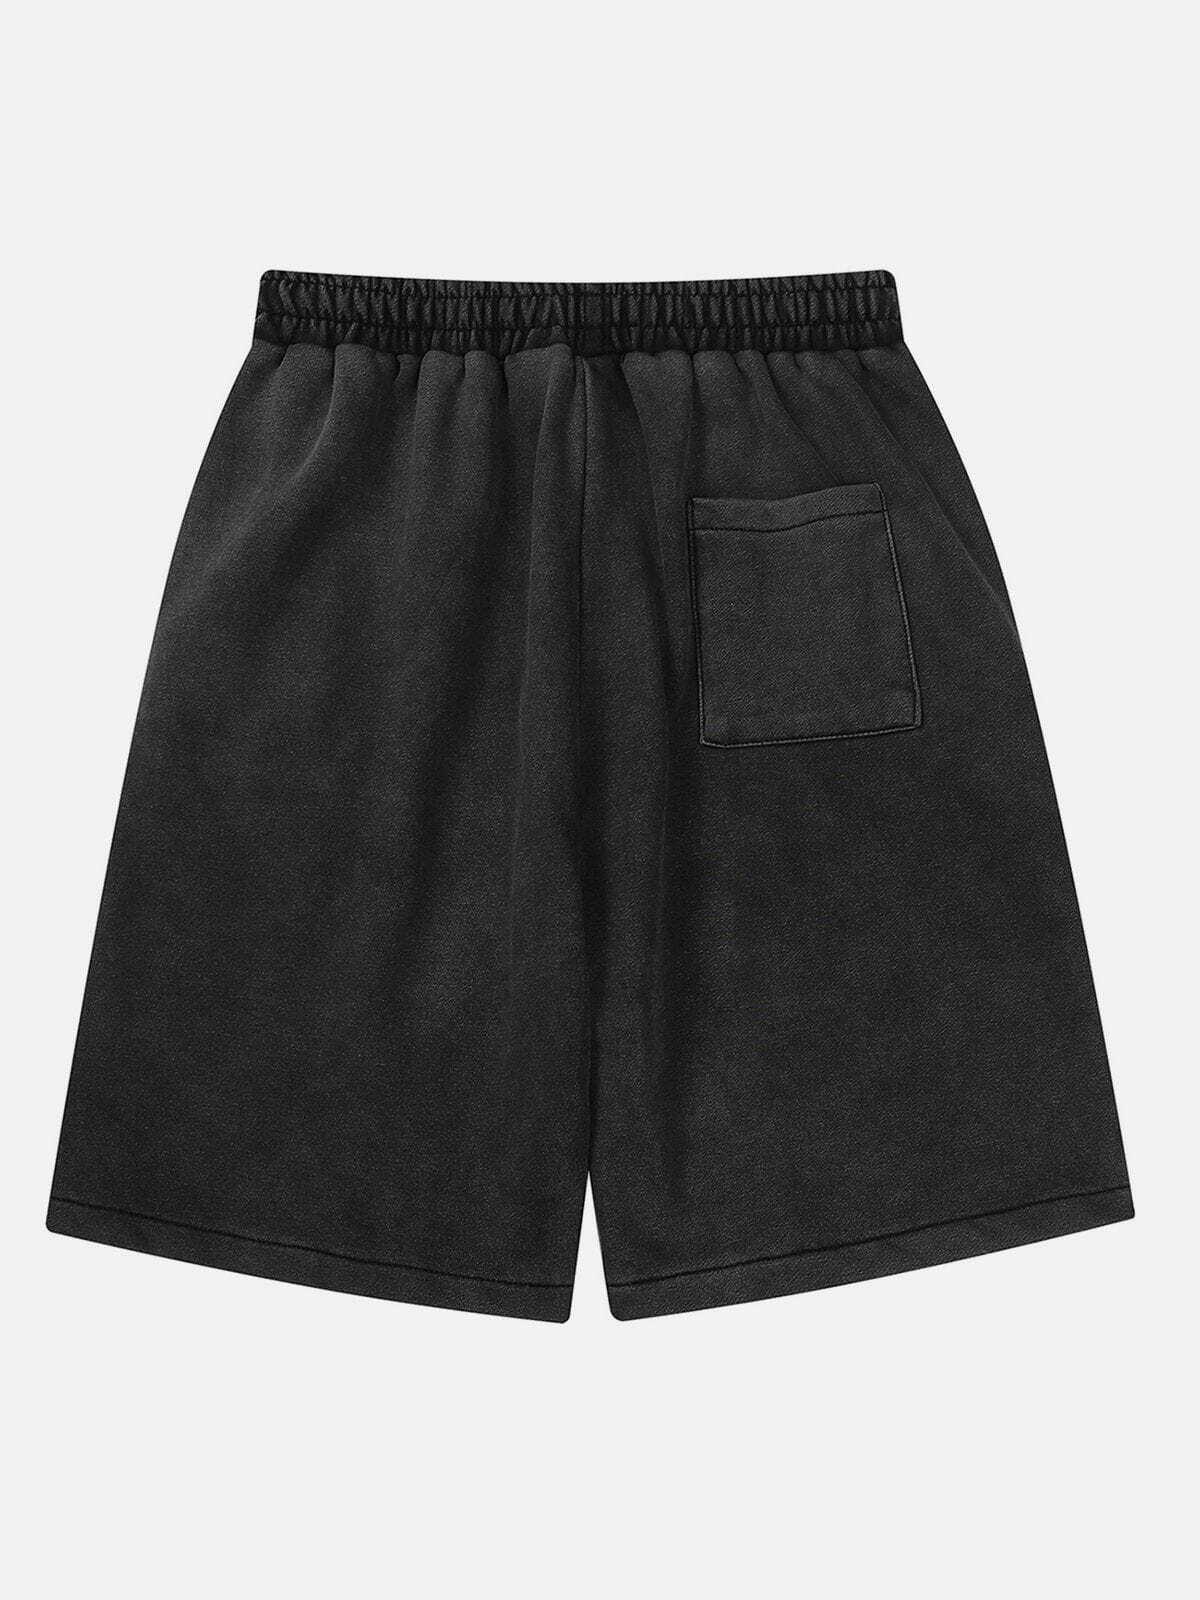 washed denim cargo shorts edgy & urban style 4996